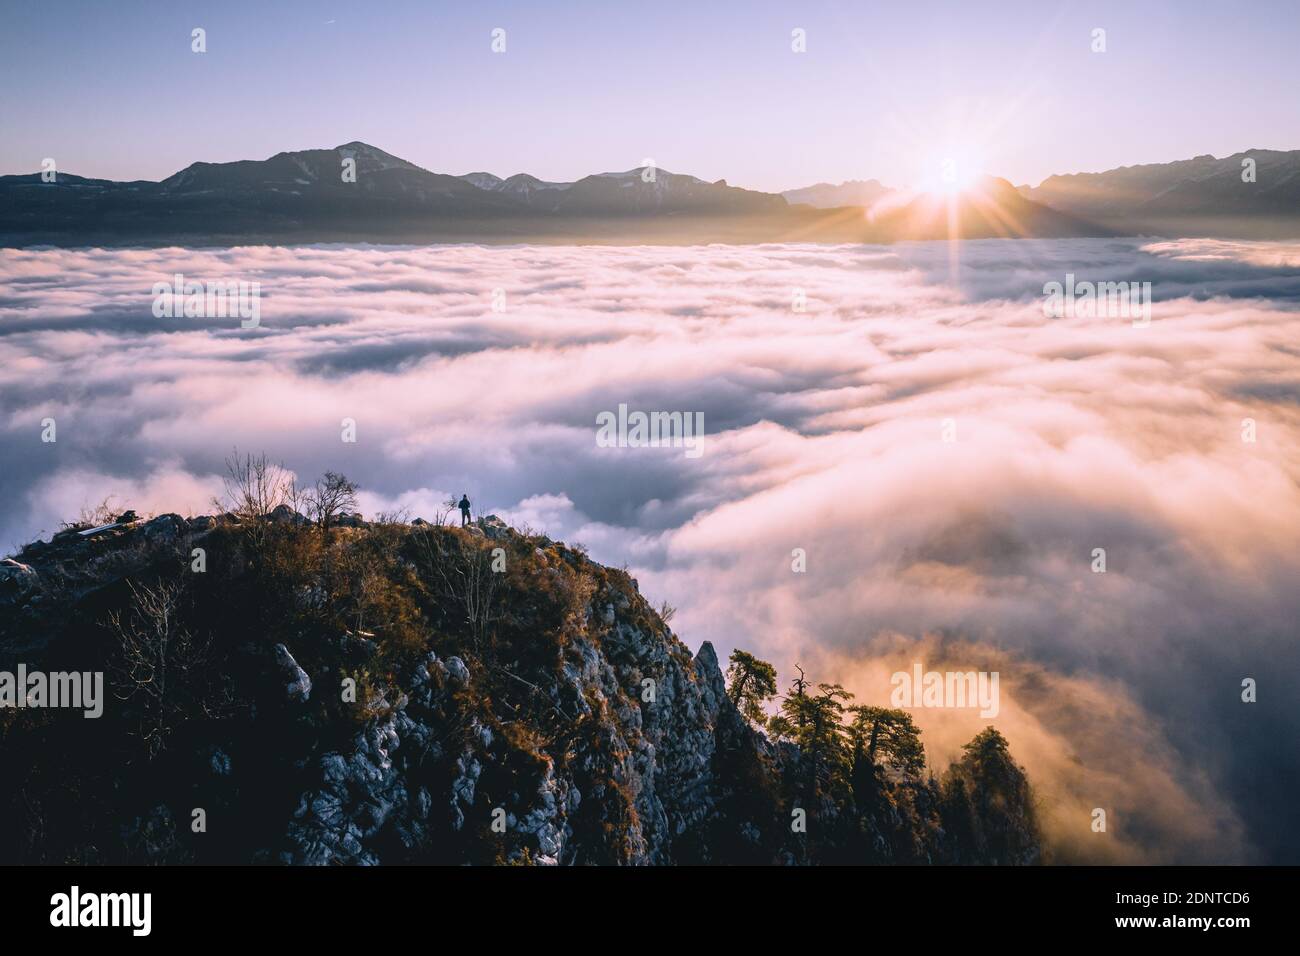 Hombre de pie en la cresta de la montaña que se eleva por encima de la alfombra de nubes, Hallein, Salzburgo, Austria Foto de stock